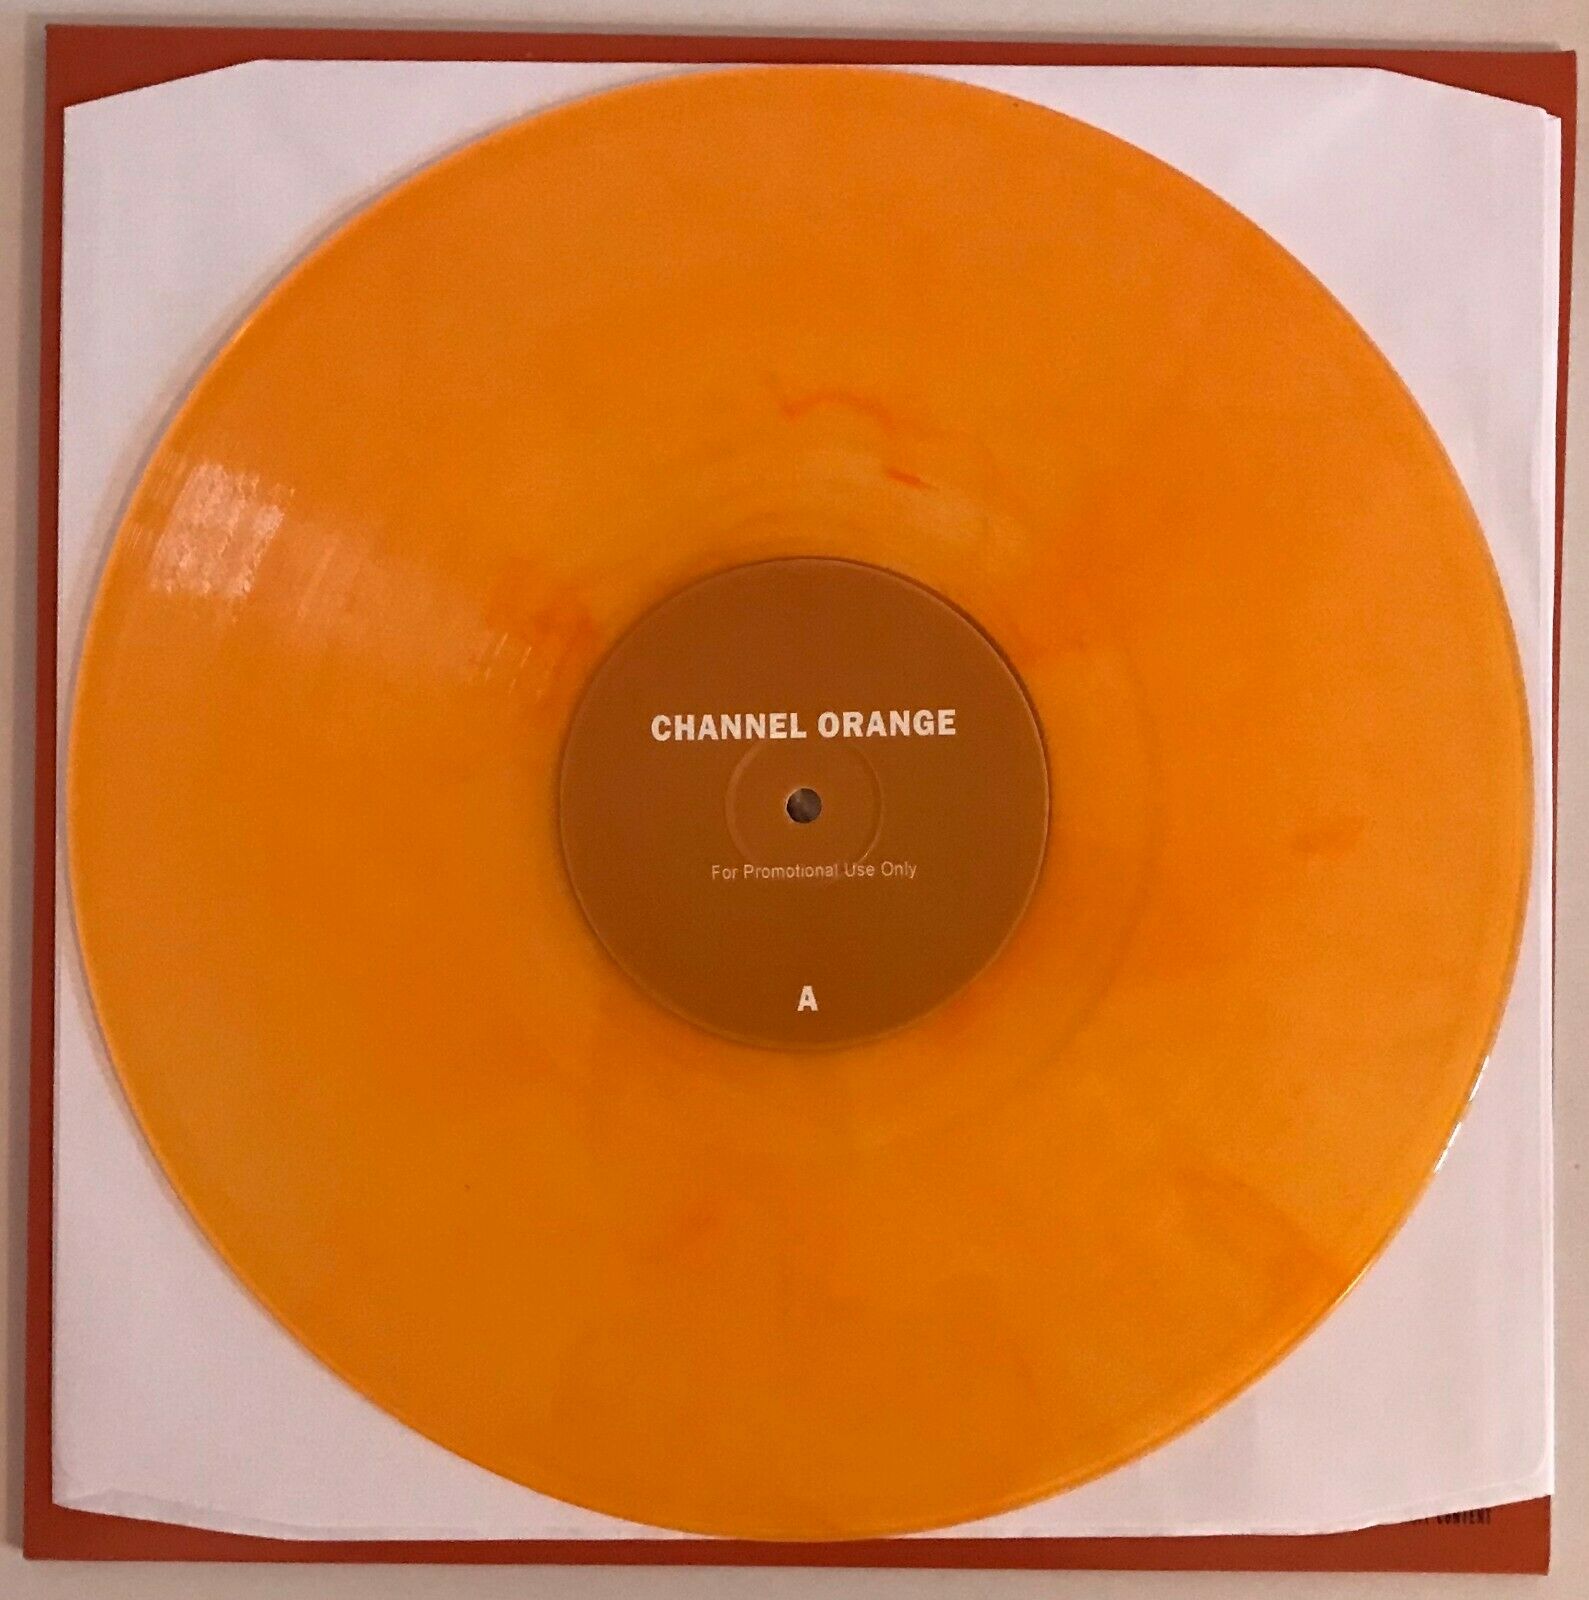  Frank Ocean Channel Orange 2xLP Orange Colored Vinyl Record  Import Blond Blonde - auction details